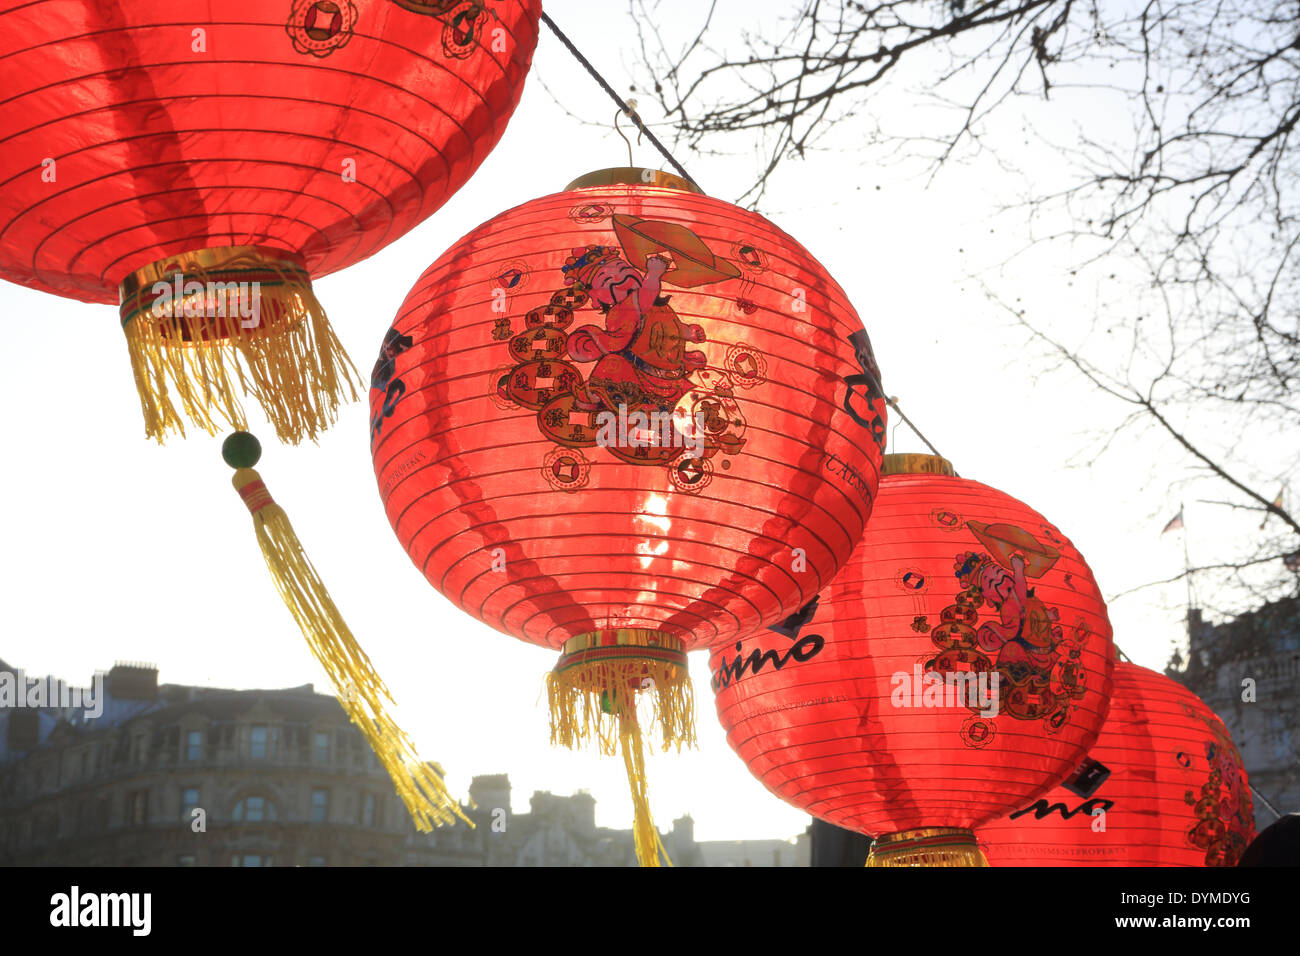 Laternen für chinesischen Neujahrsfest in 2014, Jahr des Pferdes, in Trafalgar Square, London, England, UK Stockfoto